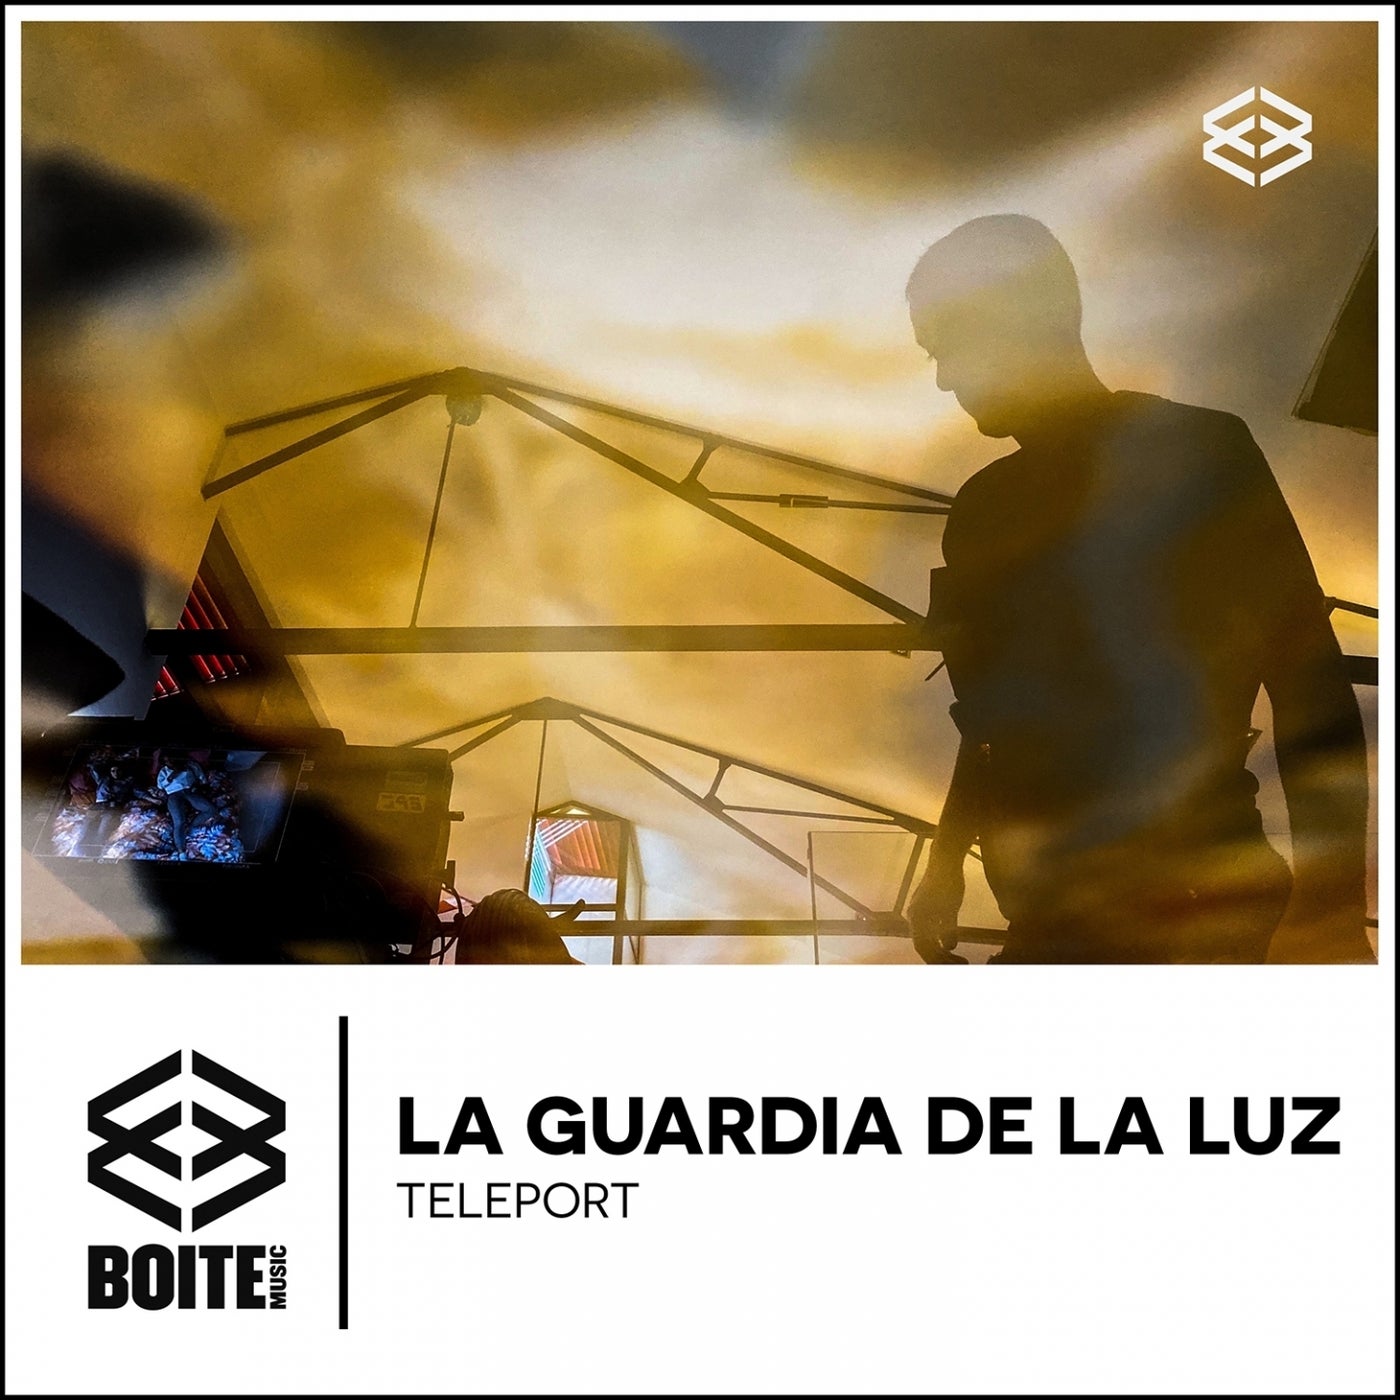 La Guardia De La Luz - Teleport [Boite Music]